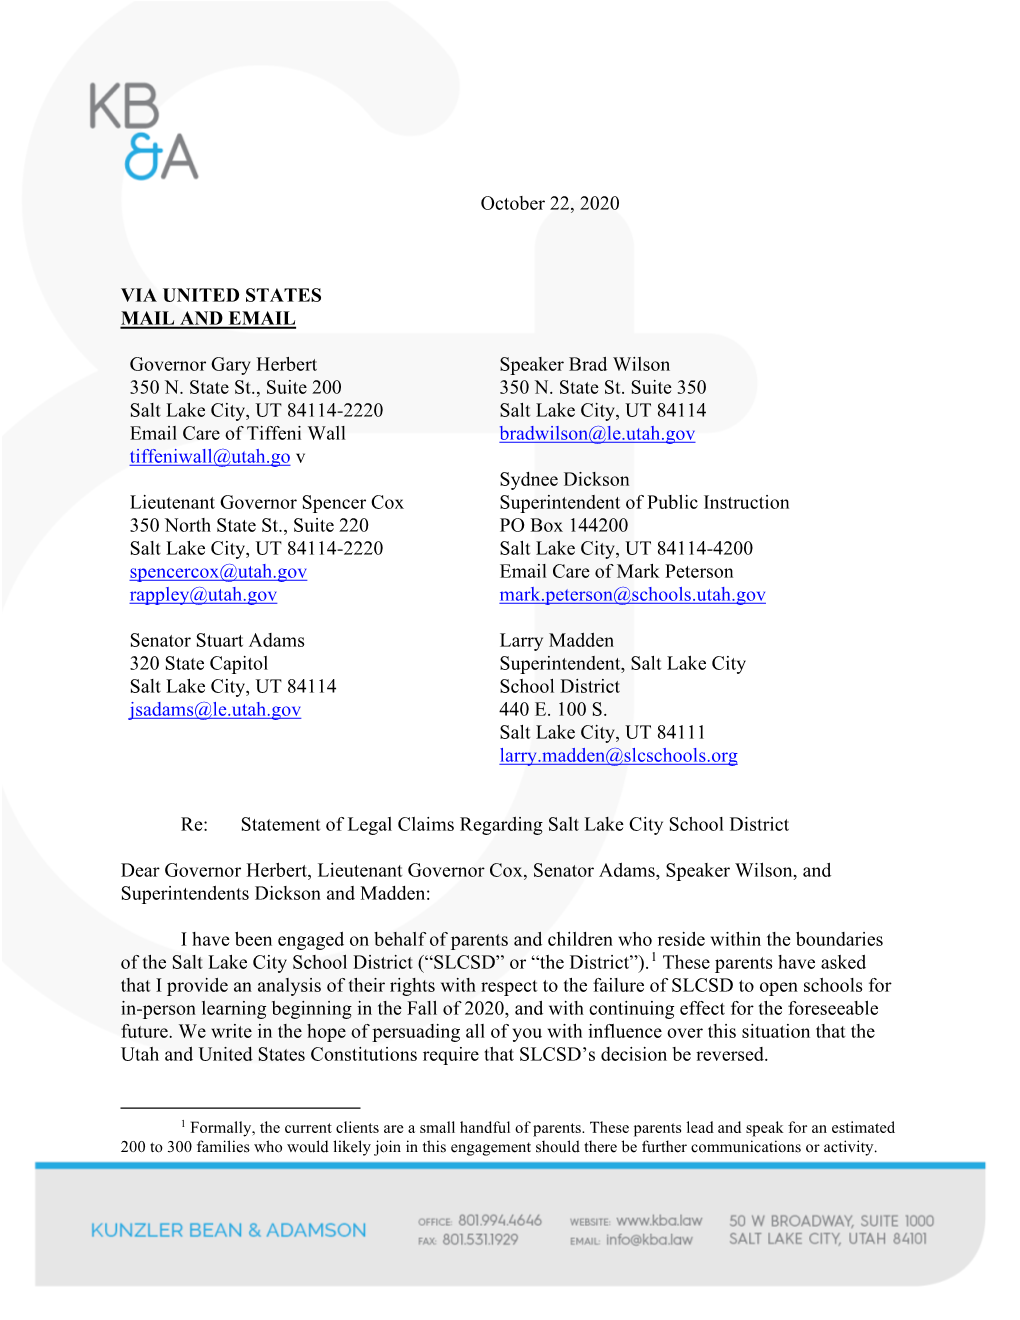 2020.10.22 Legal Claims Letter Re Salt Lake City School District (1) (1).Pdf